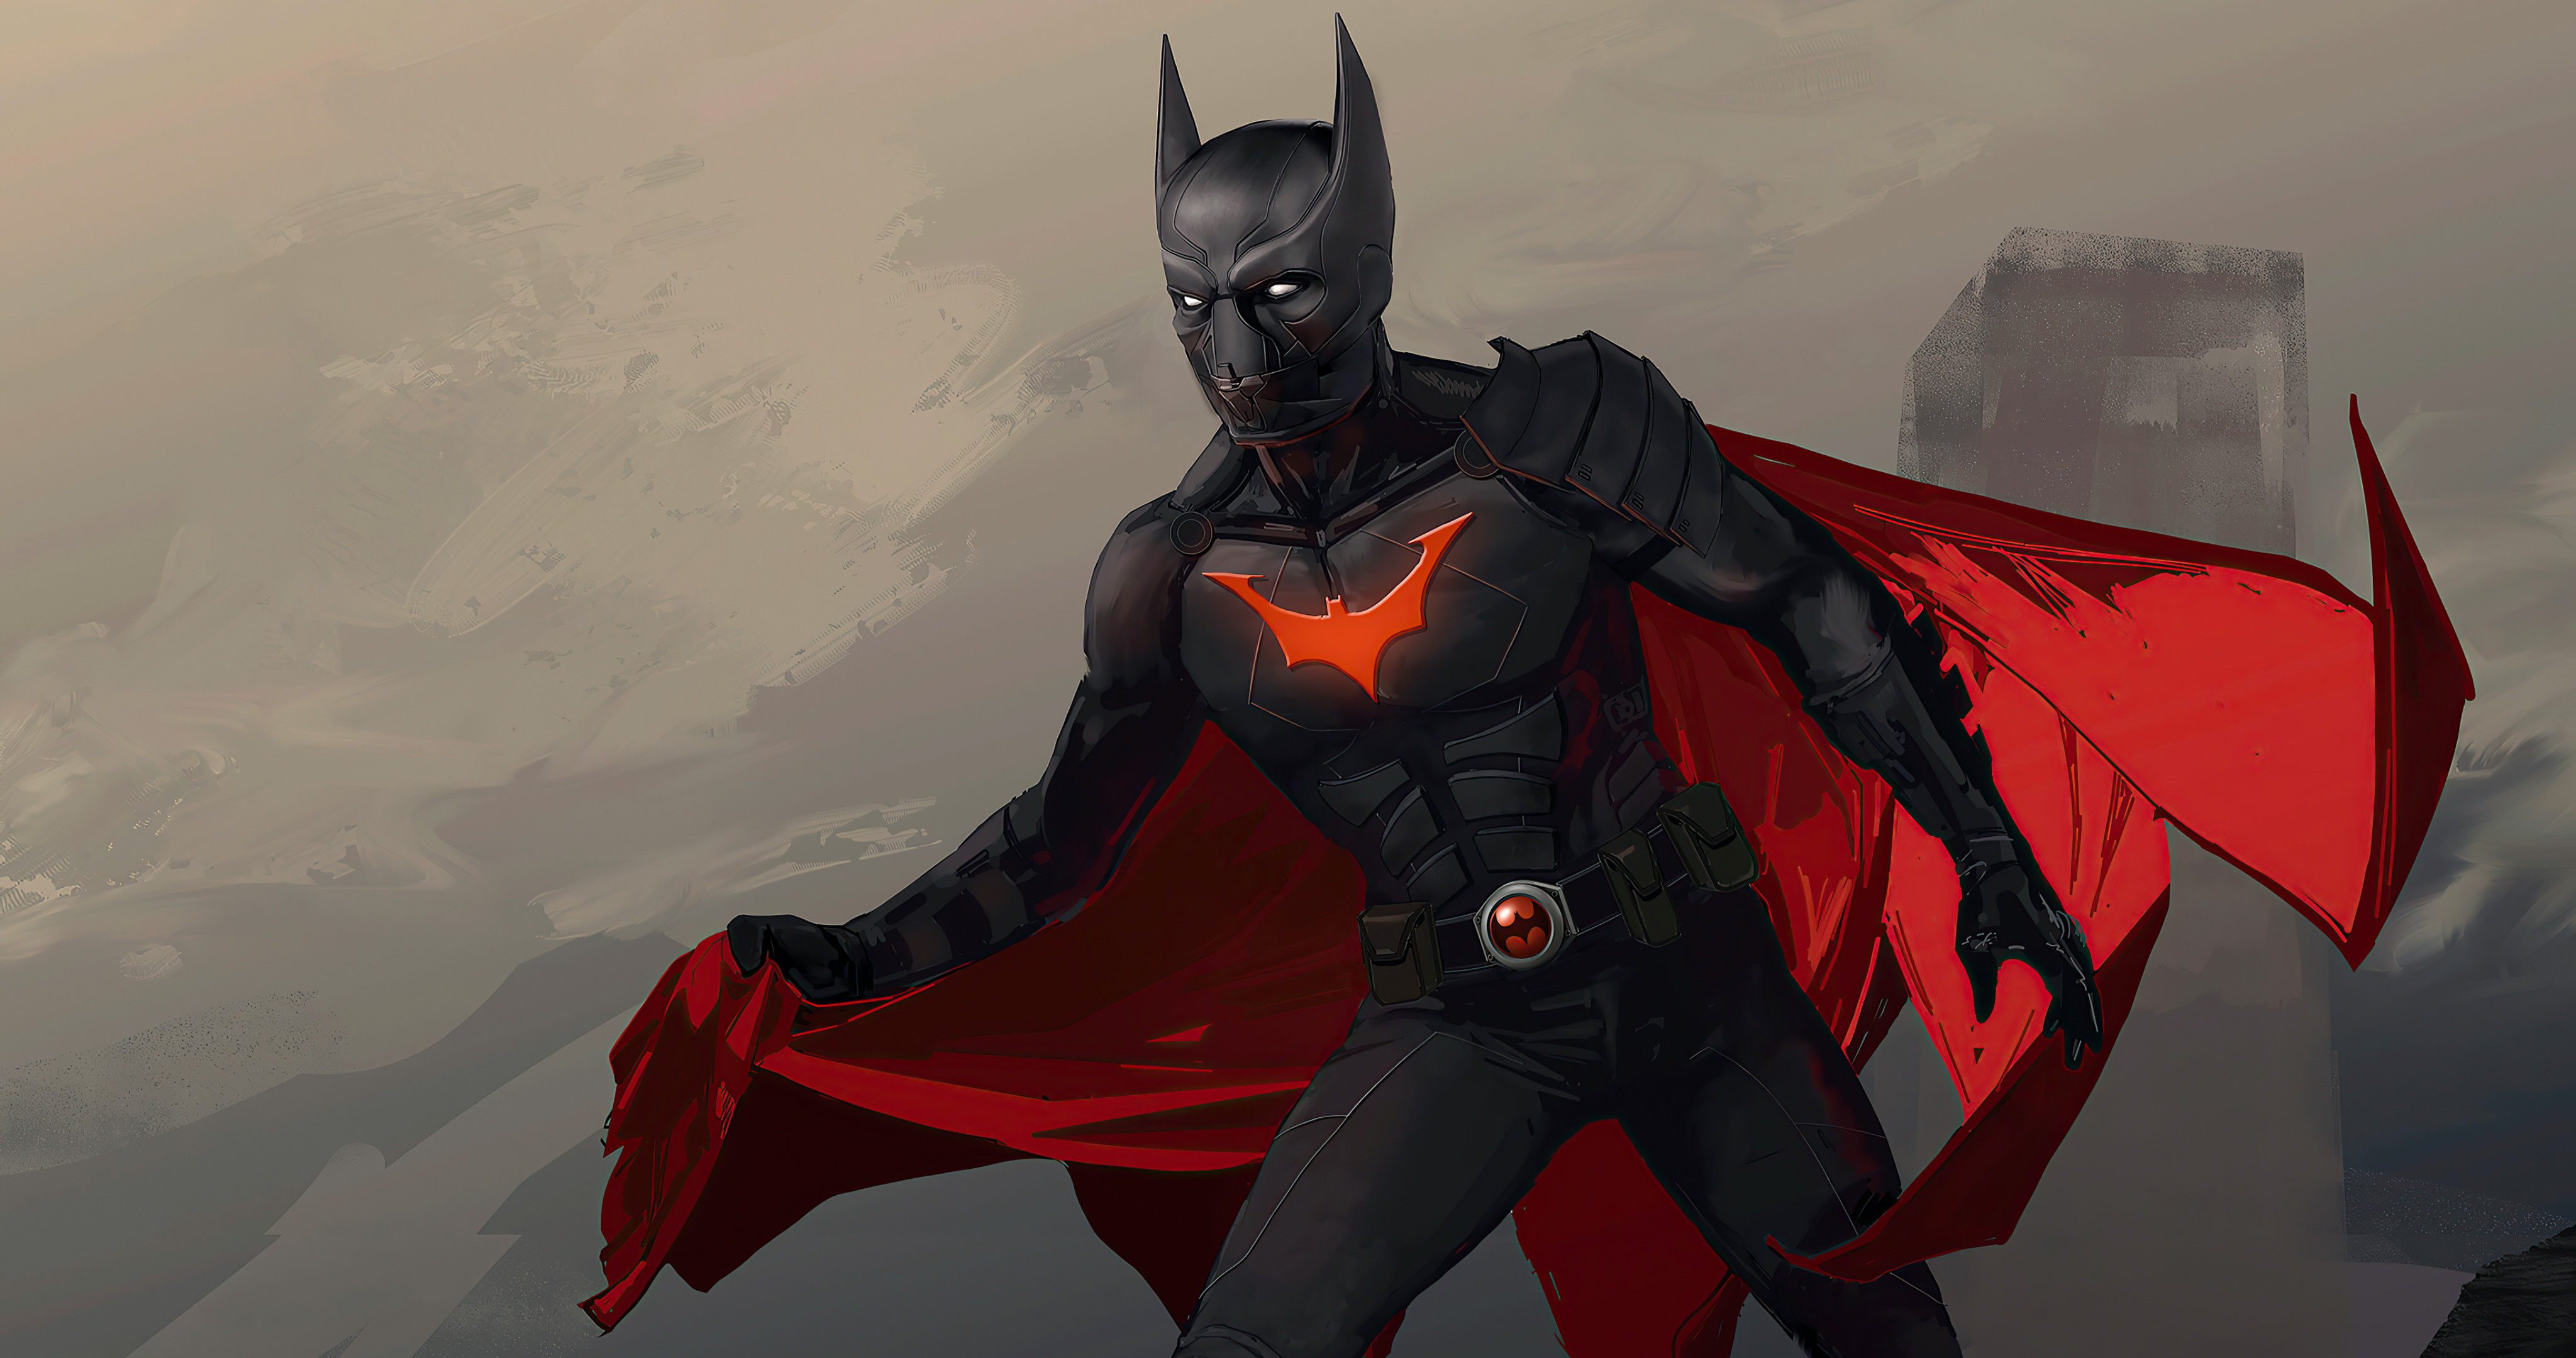 DC超英“蝙蝠侠”创意漫画插画桌面壁纸